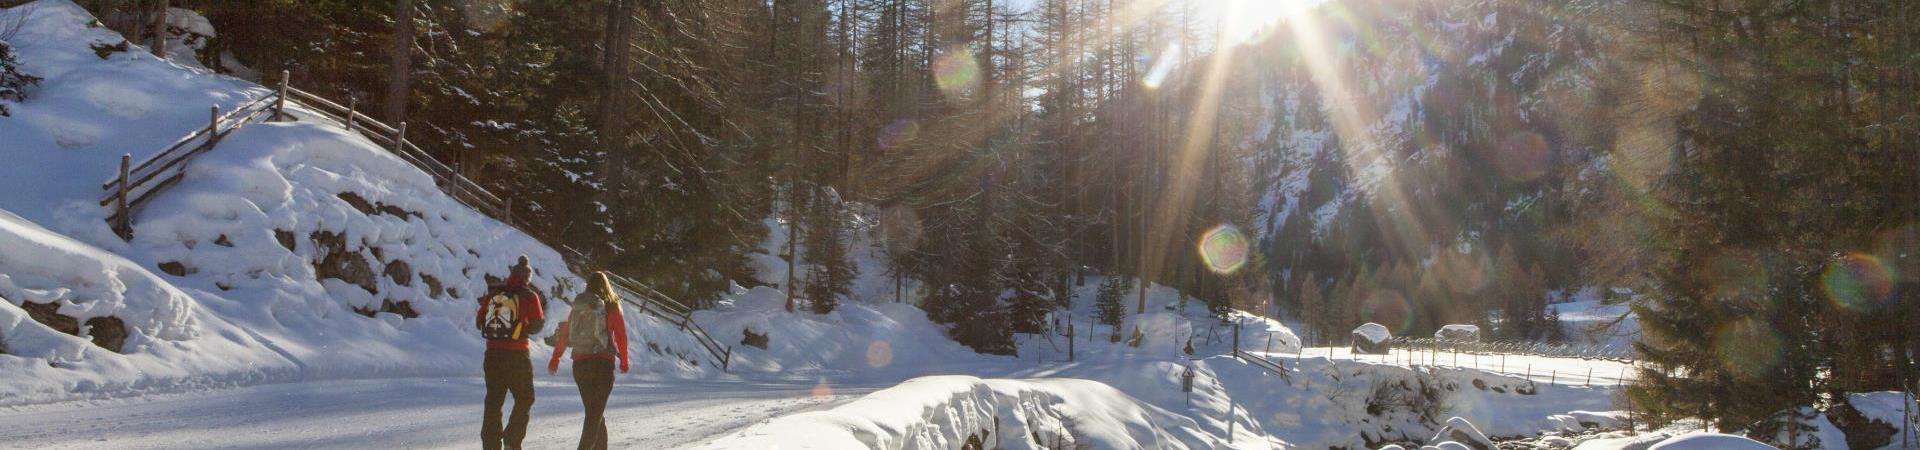 winterwandern-winterwanderweg-vinschgau-fb